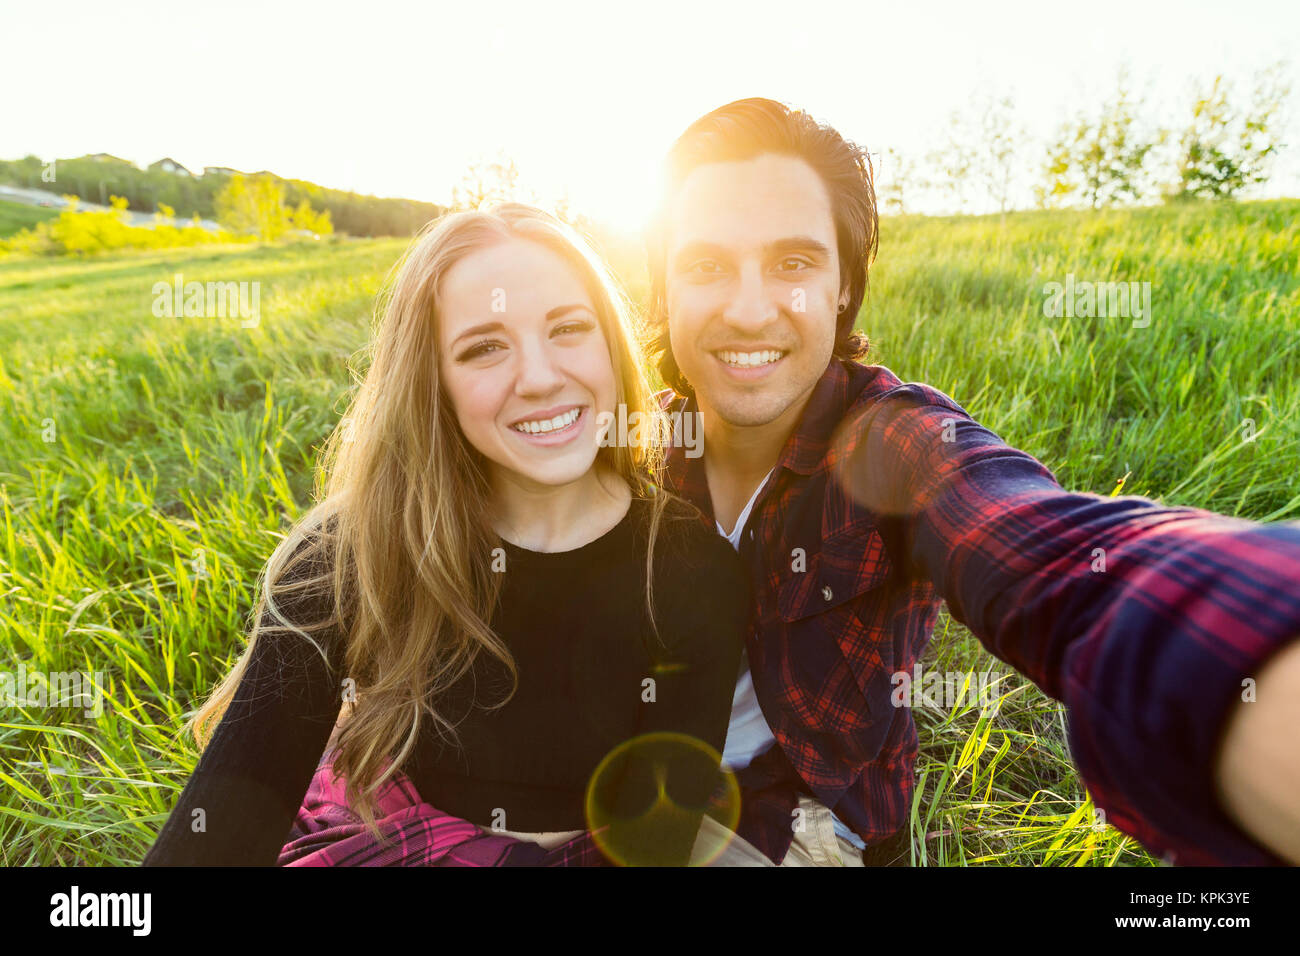 Junges Paar in einem Park für einen selbst posiert - Porträt mit ihrem Handy, Edmonton, Alberta, Kanada Stockfoto